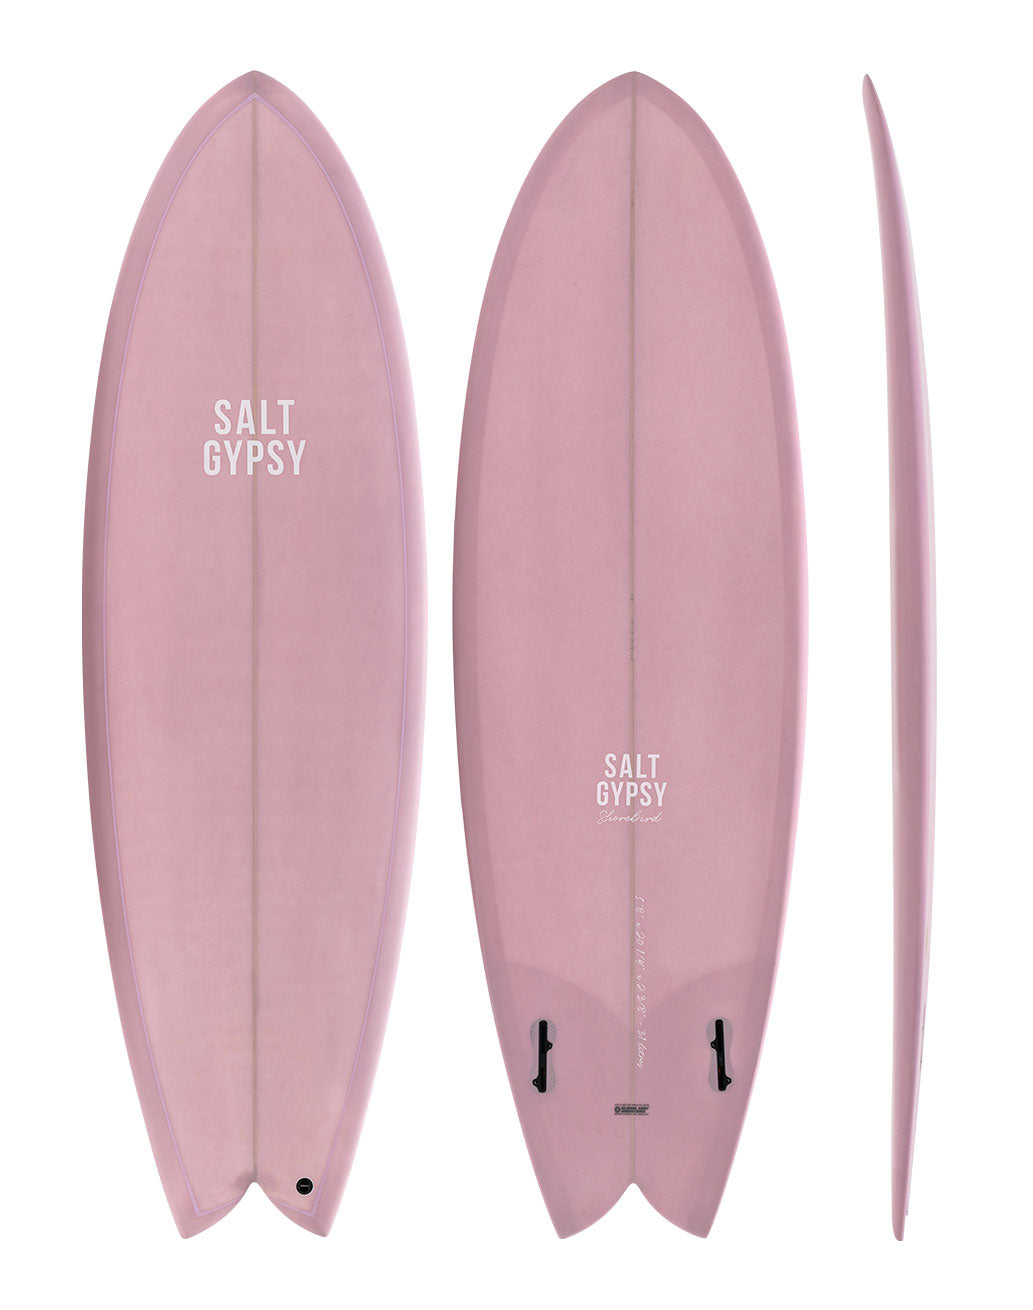 Salt Gypsy Surfboards - Shorebird dirty pink twin fin surfboard